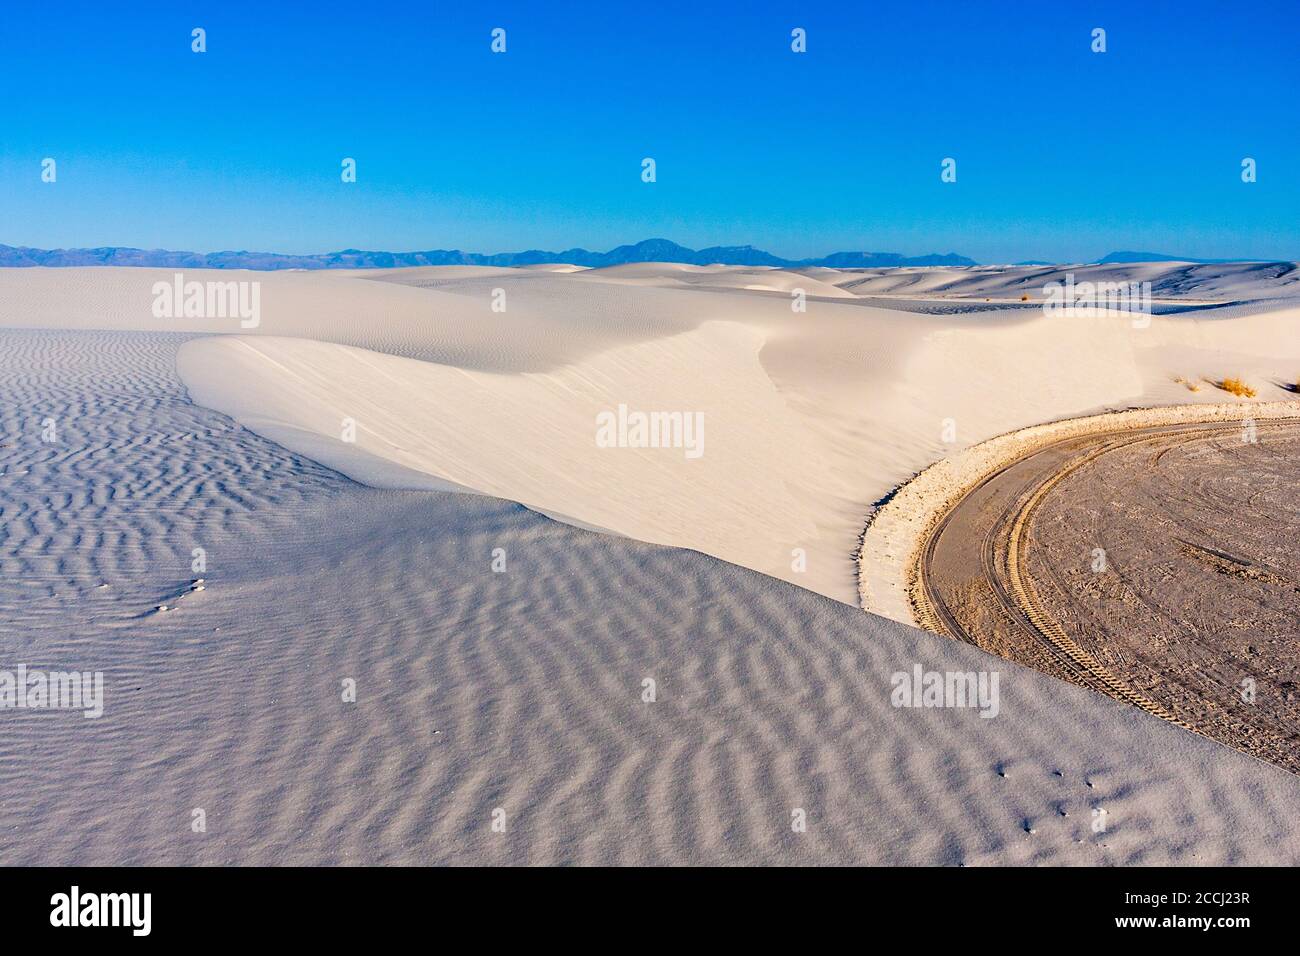 Dunes de sable au parc national de White Sands, au Nouveau-Mexique, une matinée froide en février. Extrémité nord du désert de Chihuahuan. Banque D'Images